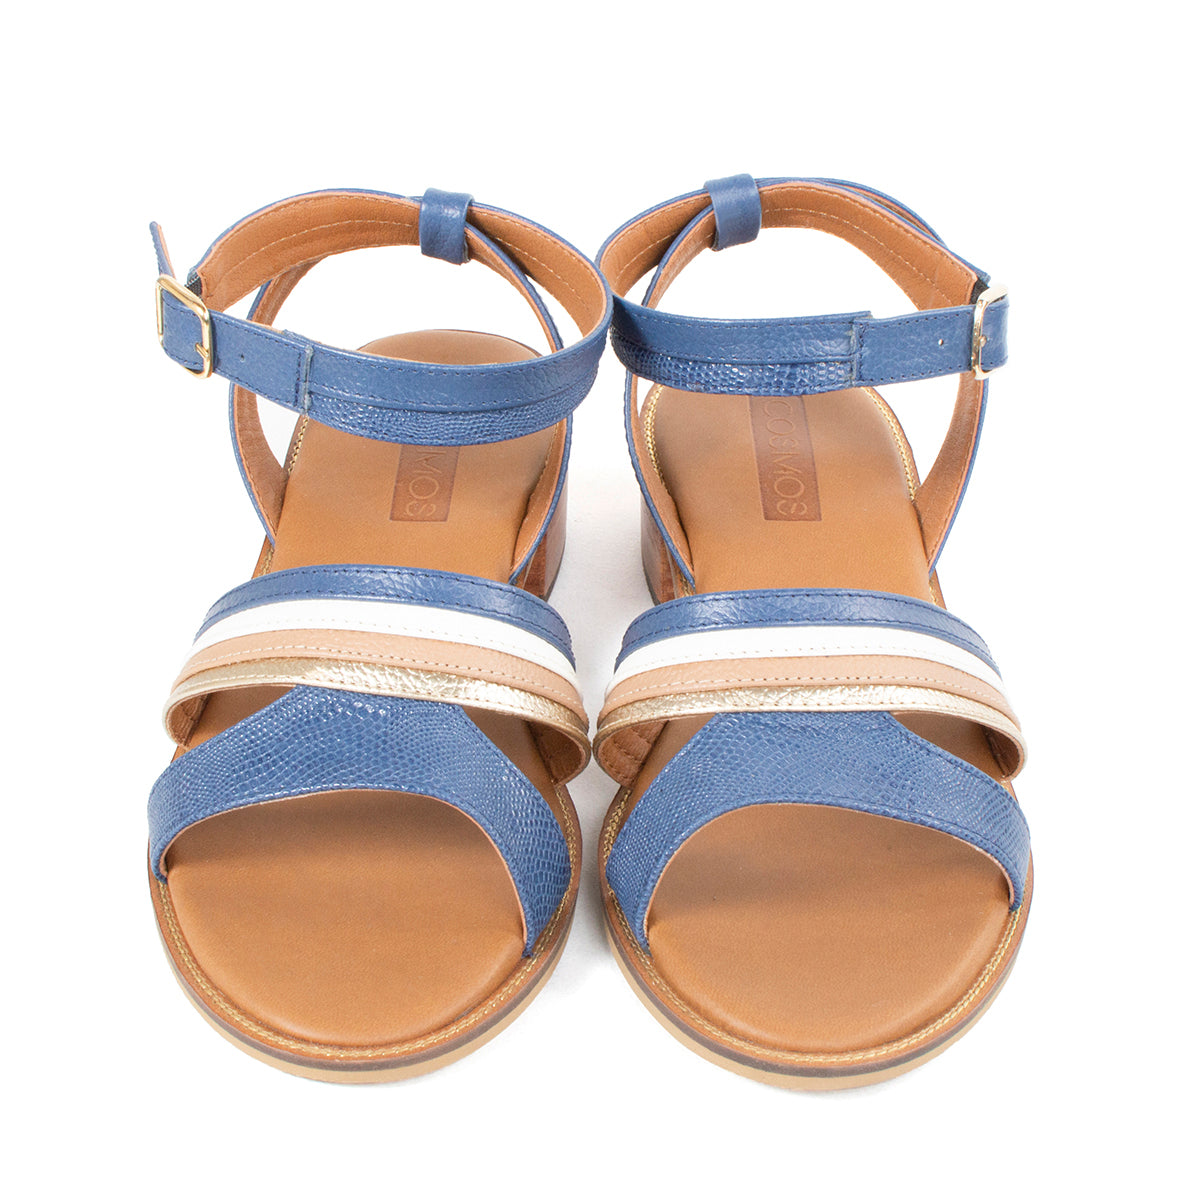 Sandalias de cuero color azul